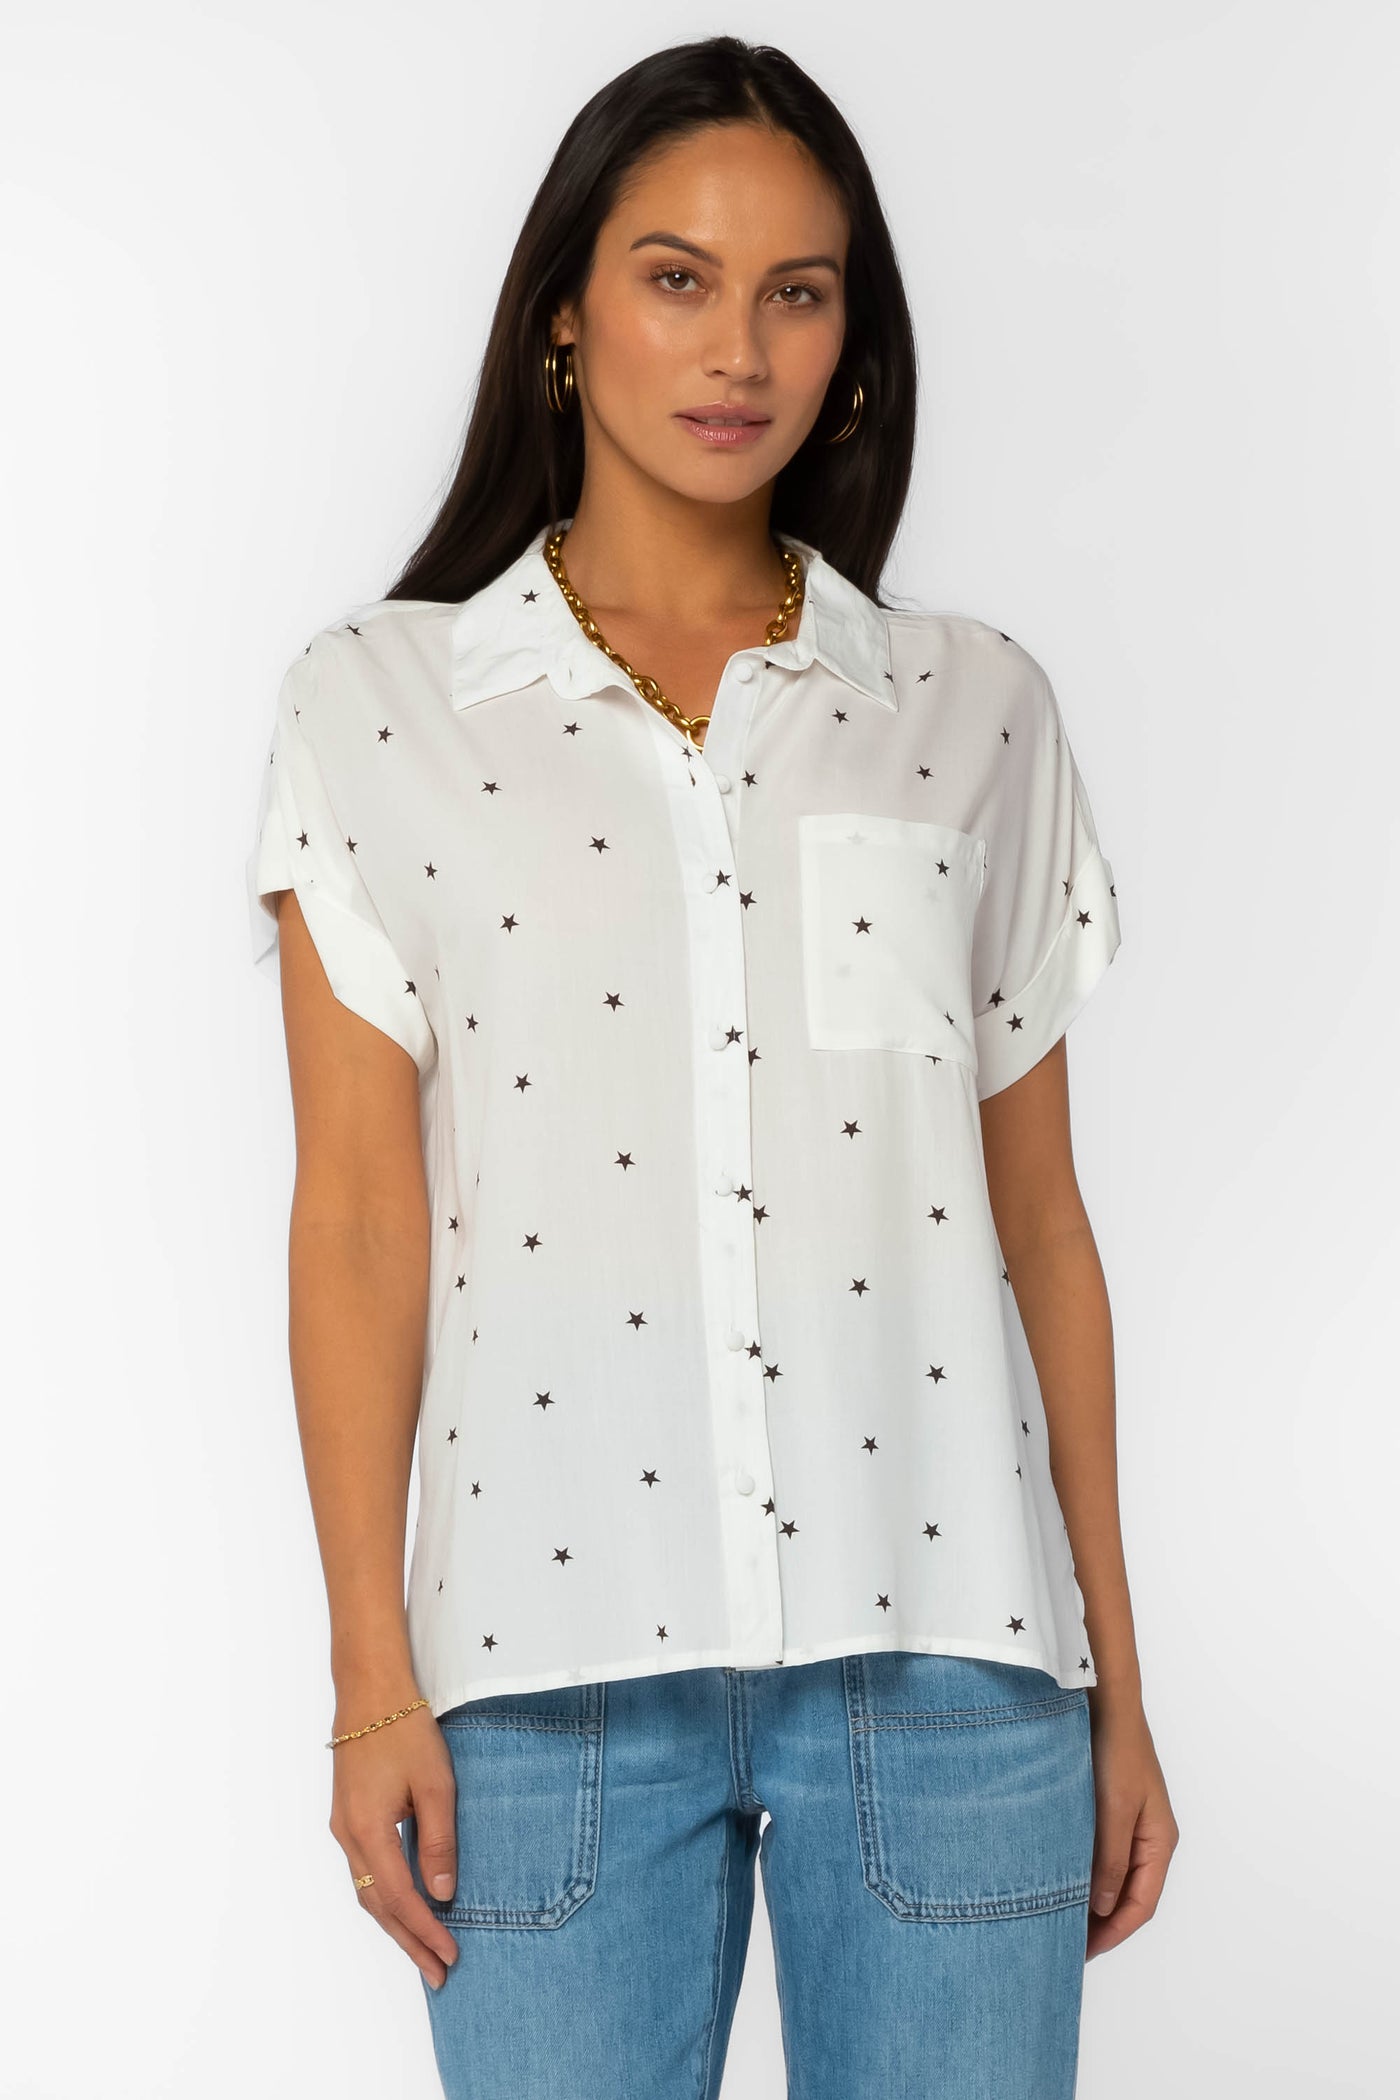 Edison Stars Shirt - Tops - Velvet Heart Clothing